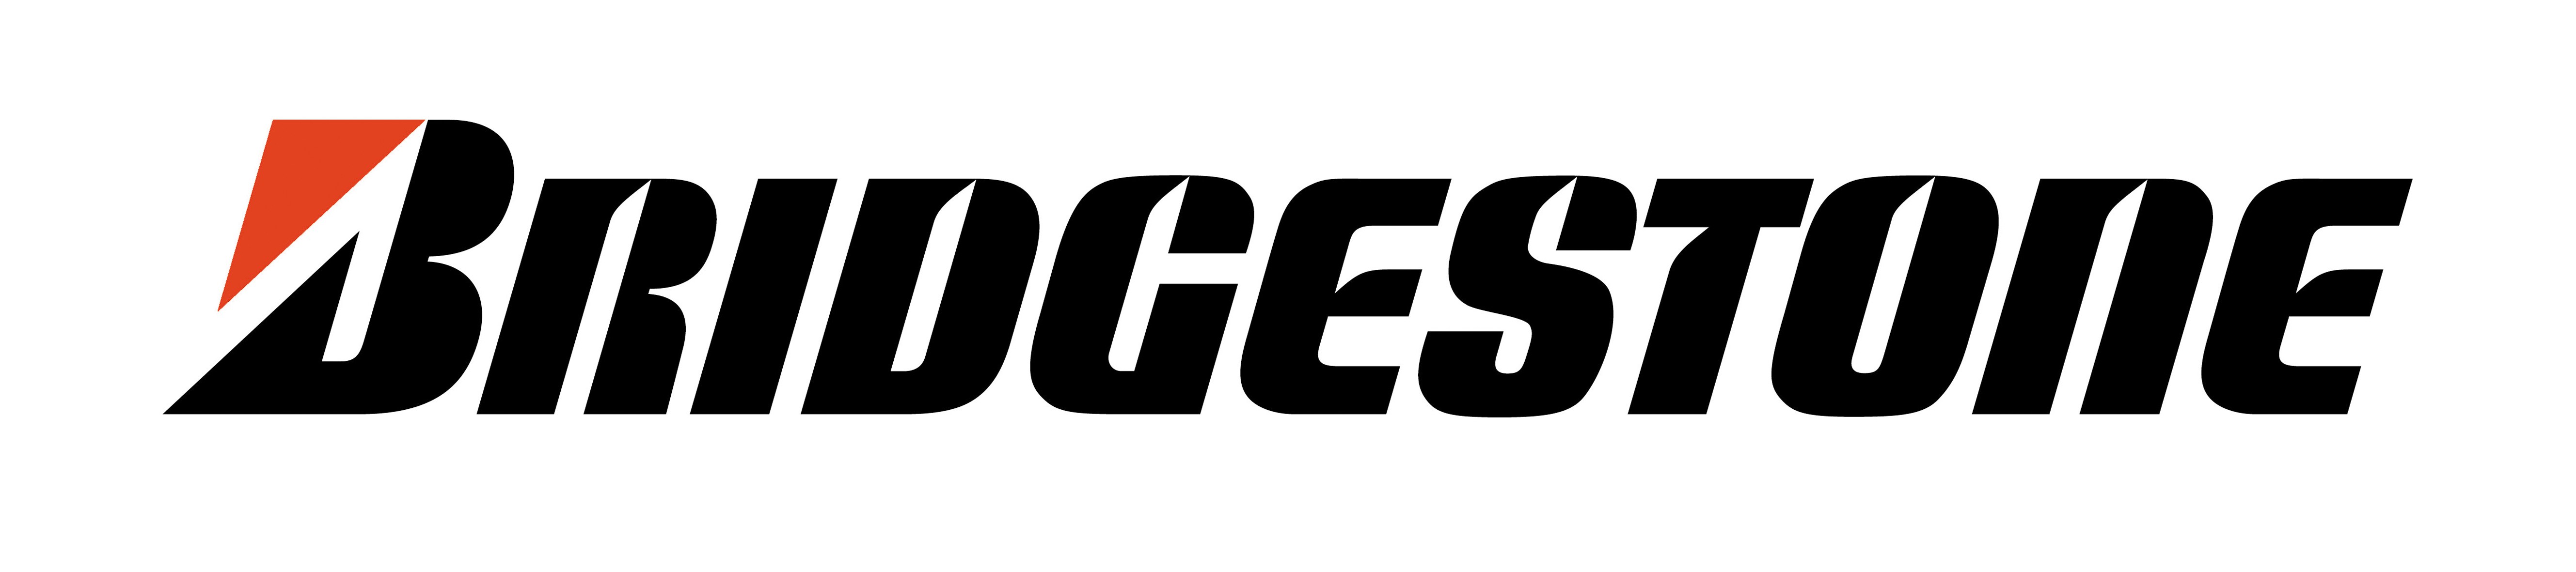 Bridgestone Logo Wallpaper